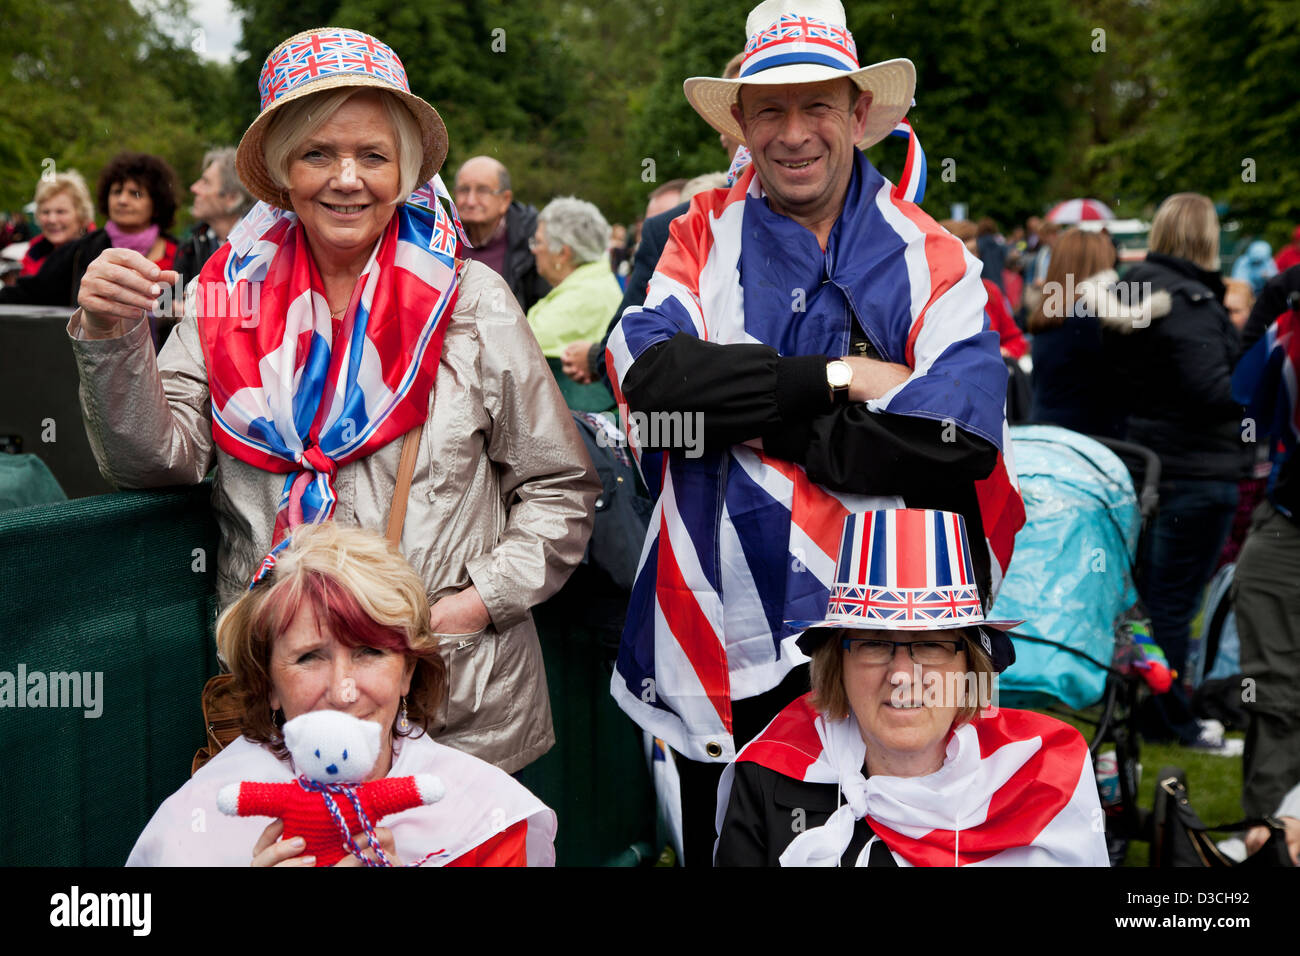 La gente vestida para las celebraciones del jubileo de la reina en St James' Park, Londres Foto de stock